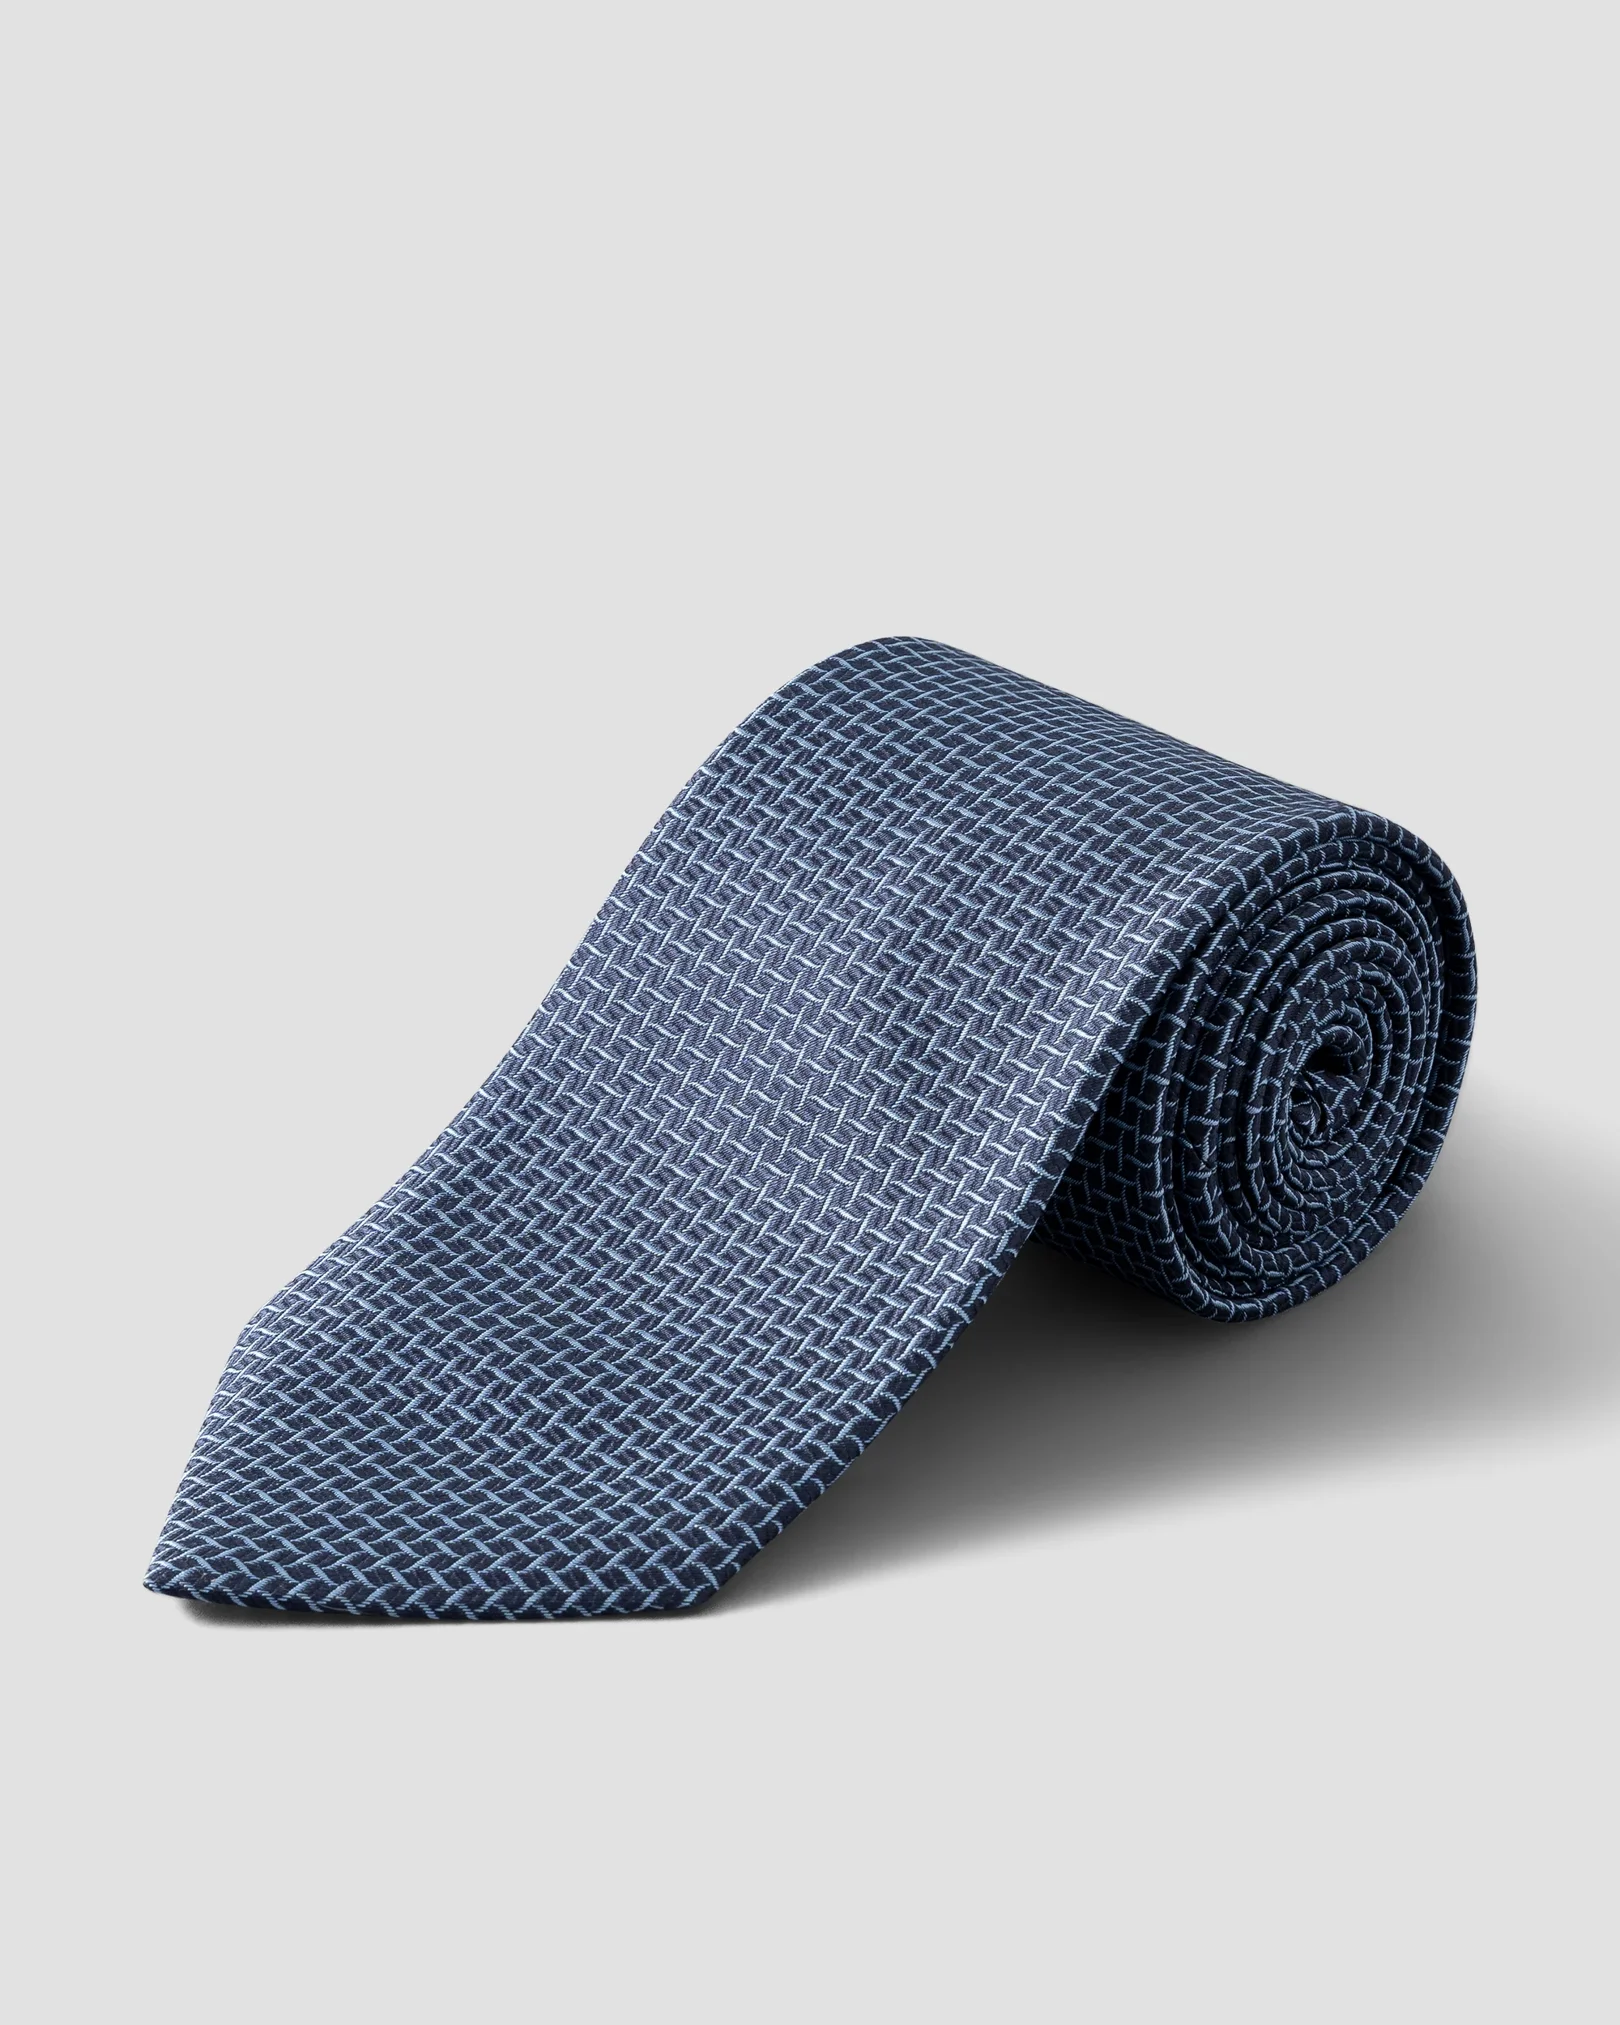 Cravate en soie imprimé géométrique bleu marine